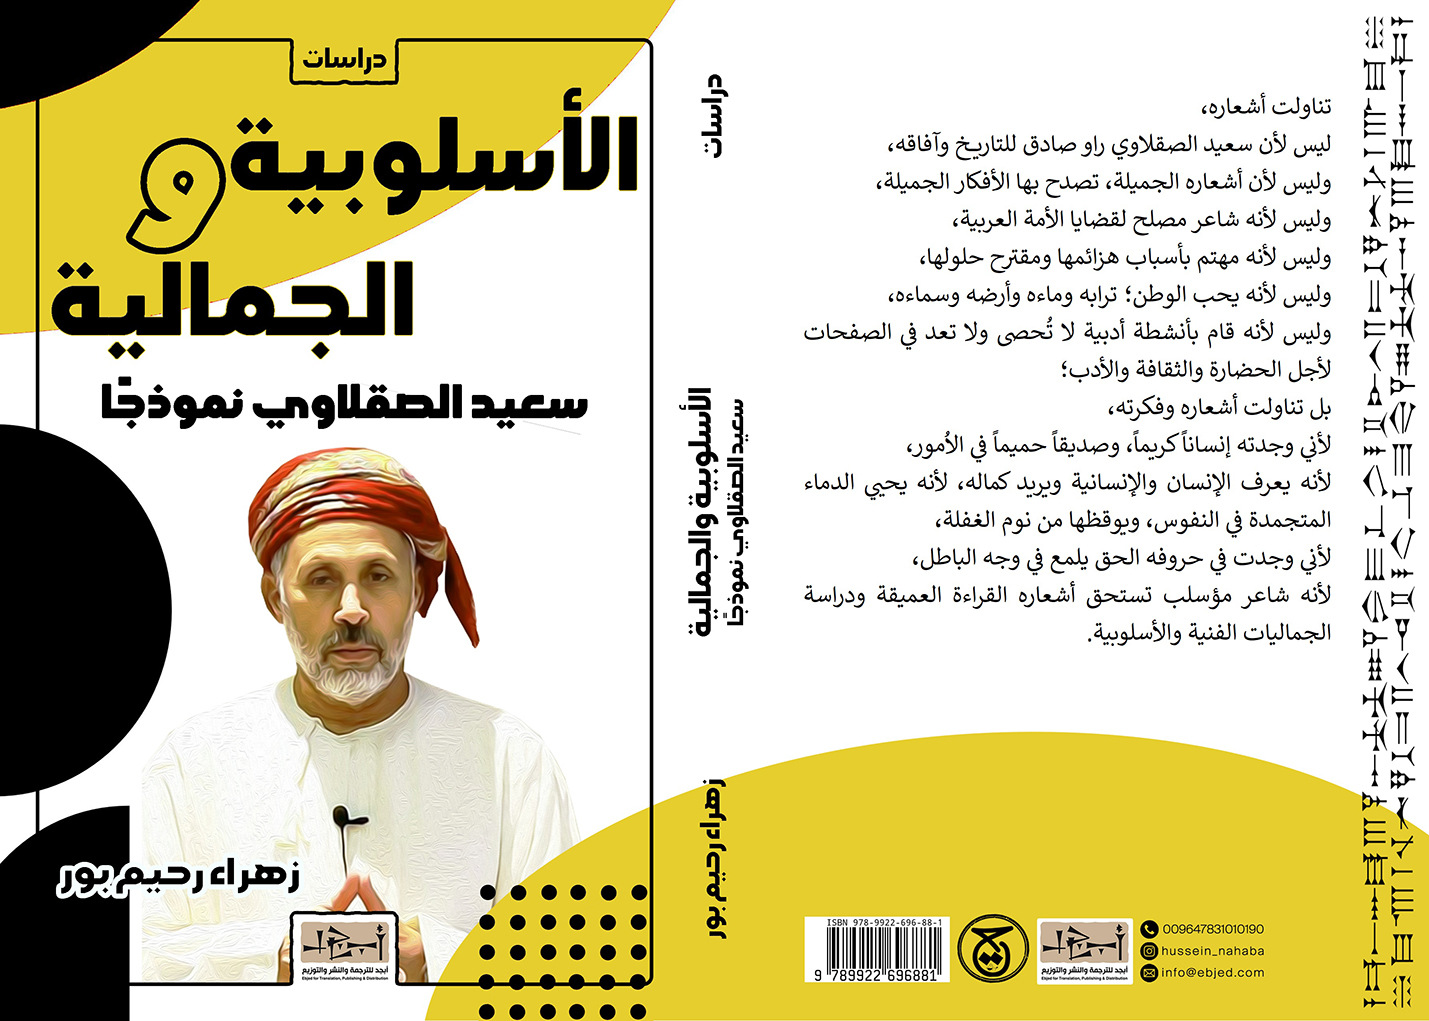 الكتاب: الاسلوبية والجمالية – سعيد الصقلاوي نموذجاً المؤلف: زهراء رحيم بور التصنيف: دراسات